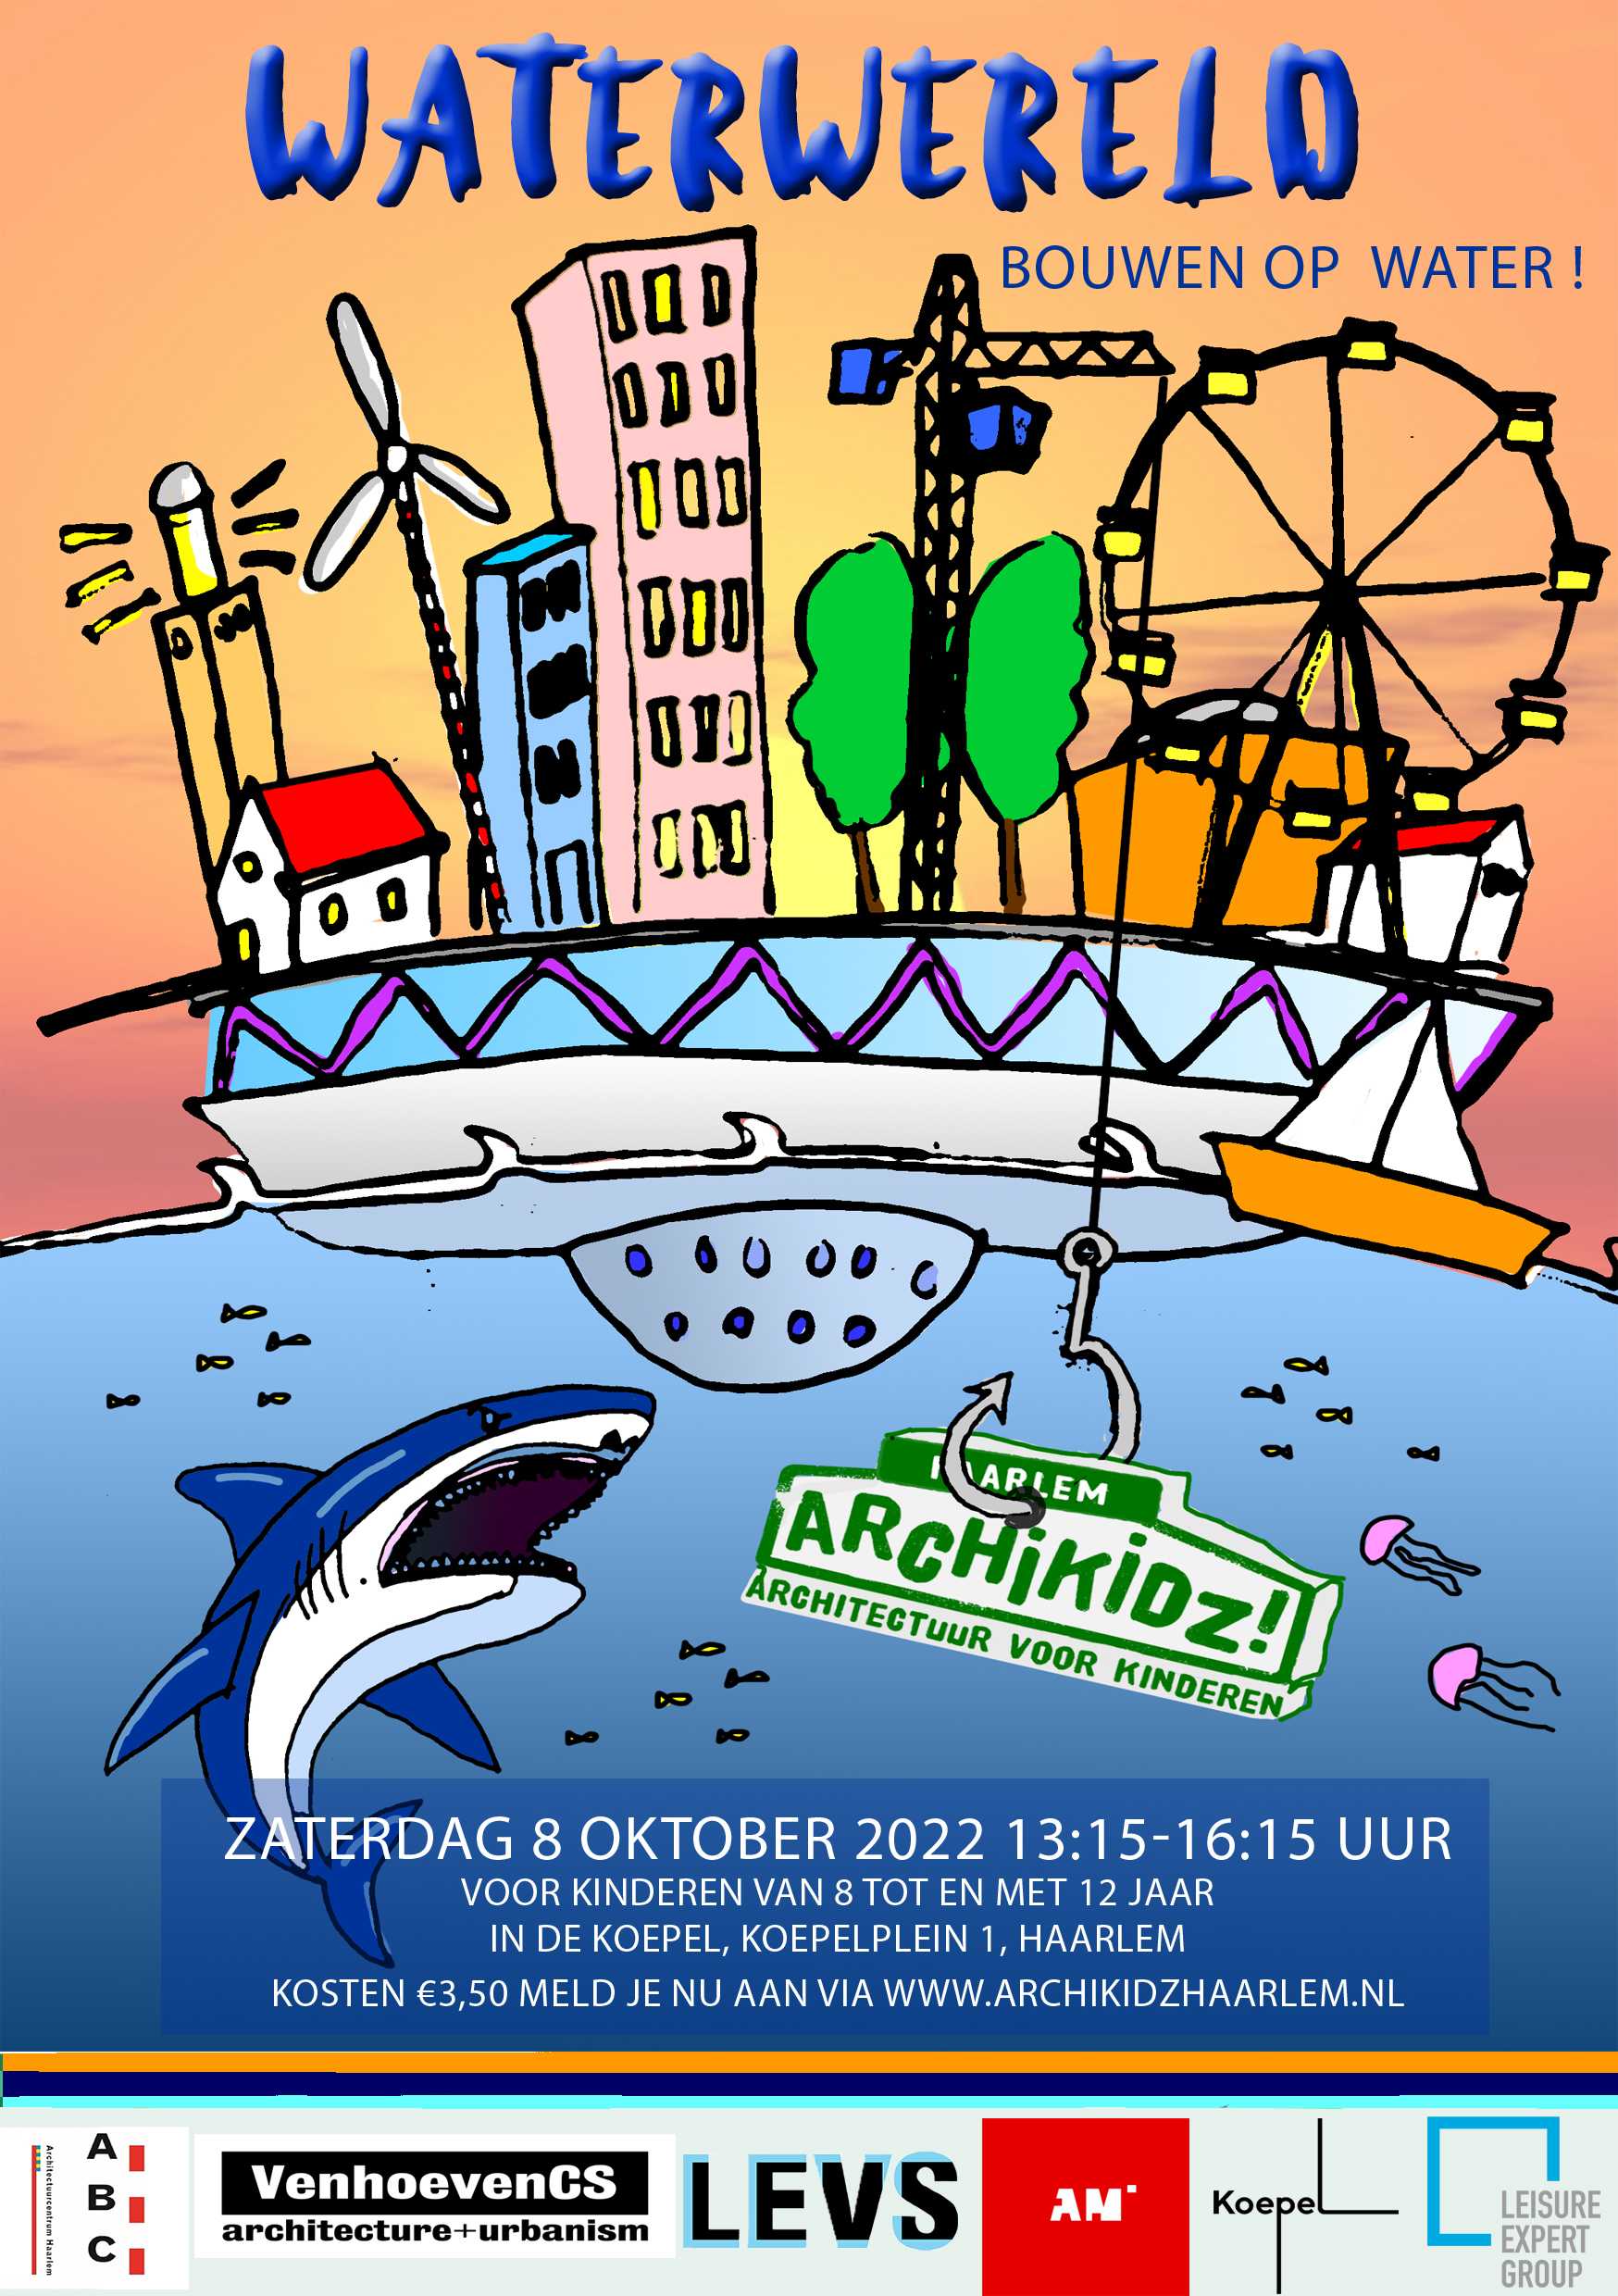 Zaterdag 8 oktober is het zover! Na twee jaar kunnen we eindelijk weer los. En dit jaar beloofd het weer een spetterende dag te worden. Het thema van dit jaar is: 'WATERWERELD, bouwen in het water!'

Dus zoek je bouwhelm op en leg je speedboot aan en kom naar Archikidz Haarlem!  Want water is overal om ons heen, dus ontdek of je op, onder, boven, bij, tussen, in, aan , maar vooral met water wilt wonen! 

Tickets zijn te boeken via onze website en onderstaande link: https://www.eventbrite.nl/e/tickets-archikidz-waterwereld-bouw-op-water-415651403537

Het evenement wordt dit jaar georganiseerd in De Koepel, het monumentale gevangenisgebouw in Haarlem. We hopen dat je komt!!!